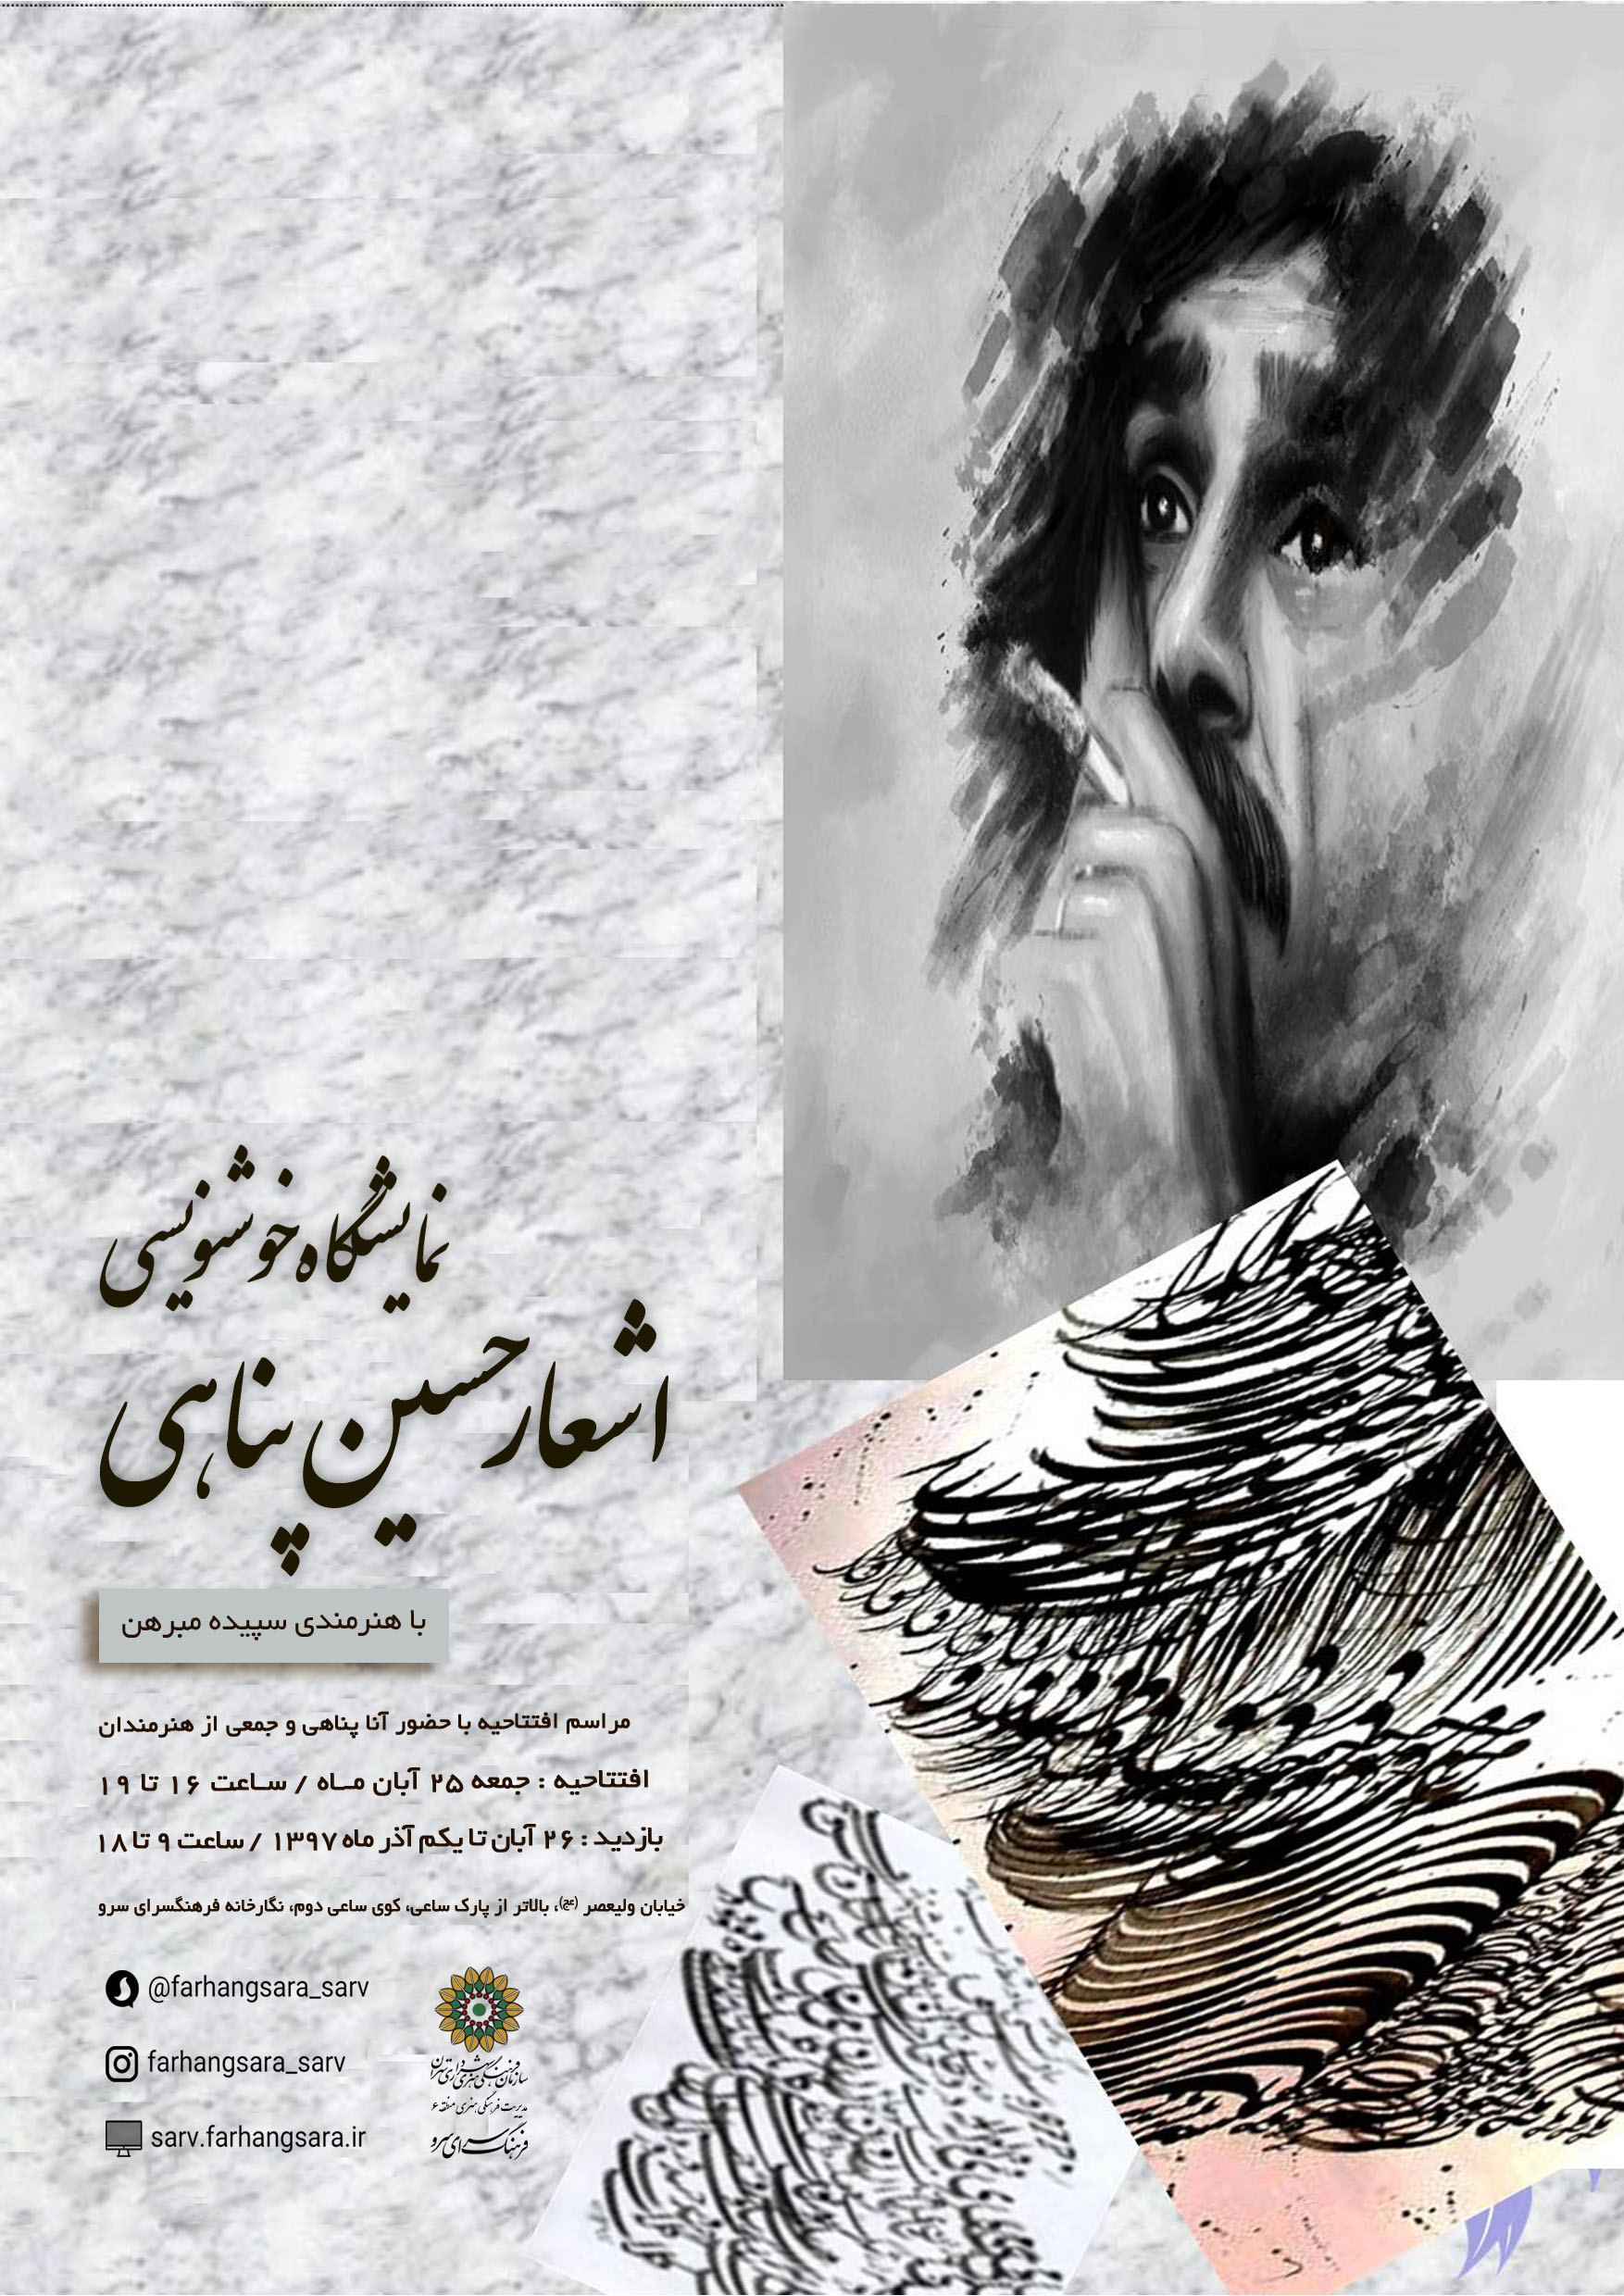 نمایشگاه خوشنویسی از اشعار مرحوم حسین پناهی